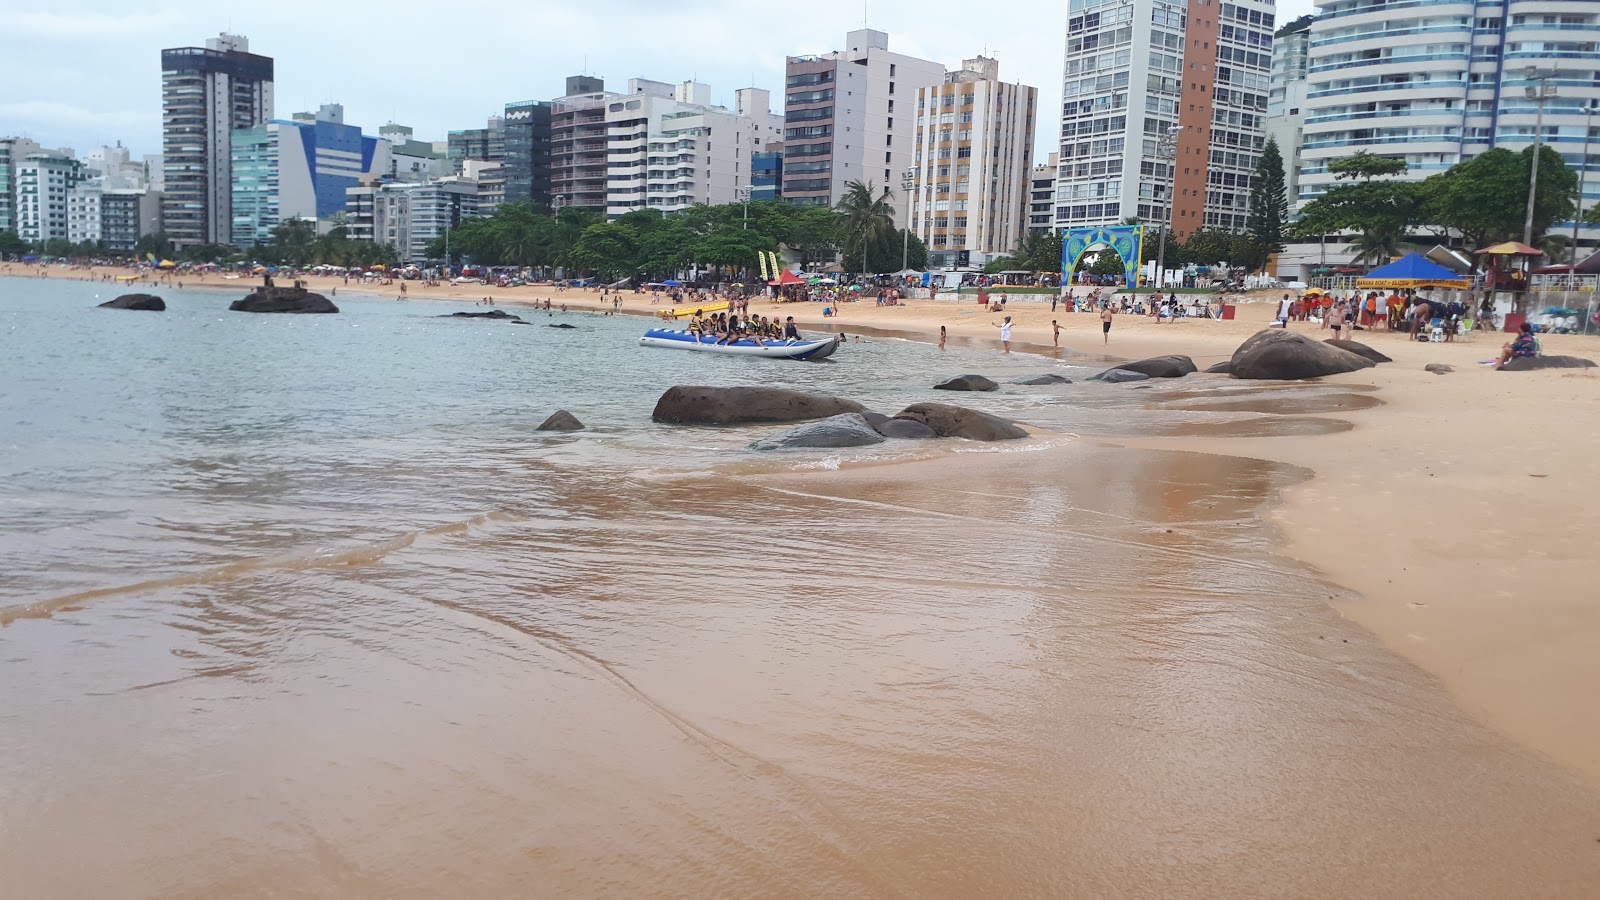 Costa Plajı'in fotoğrafı parlak kum yüzey ile